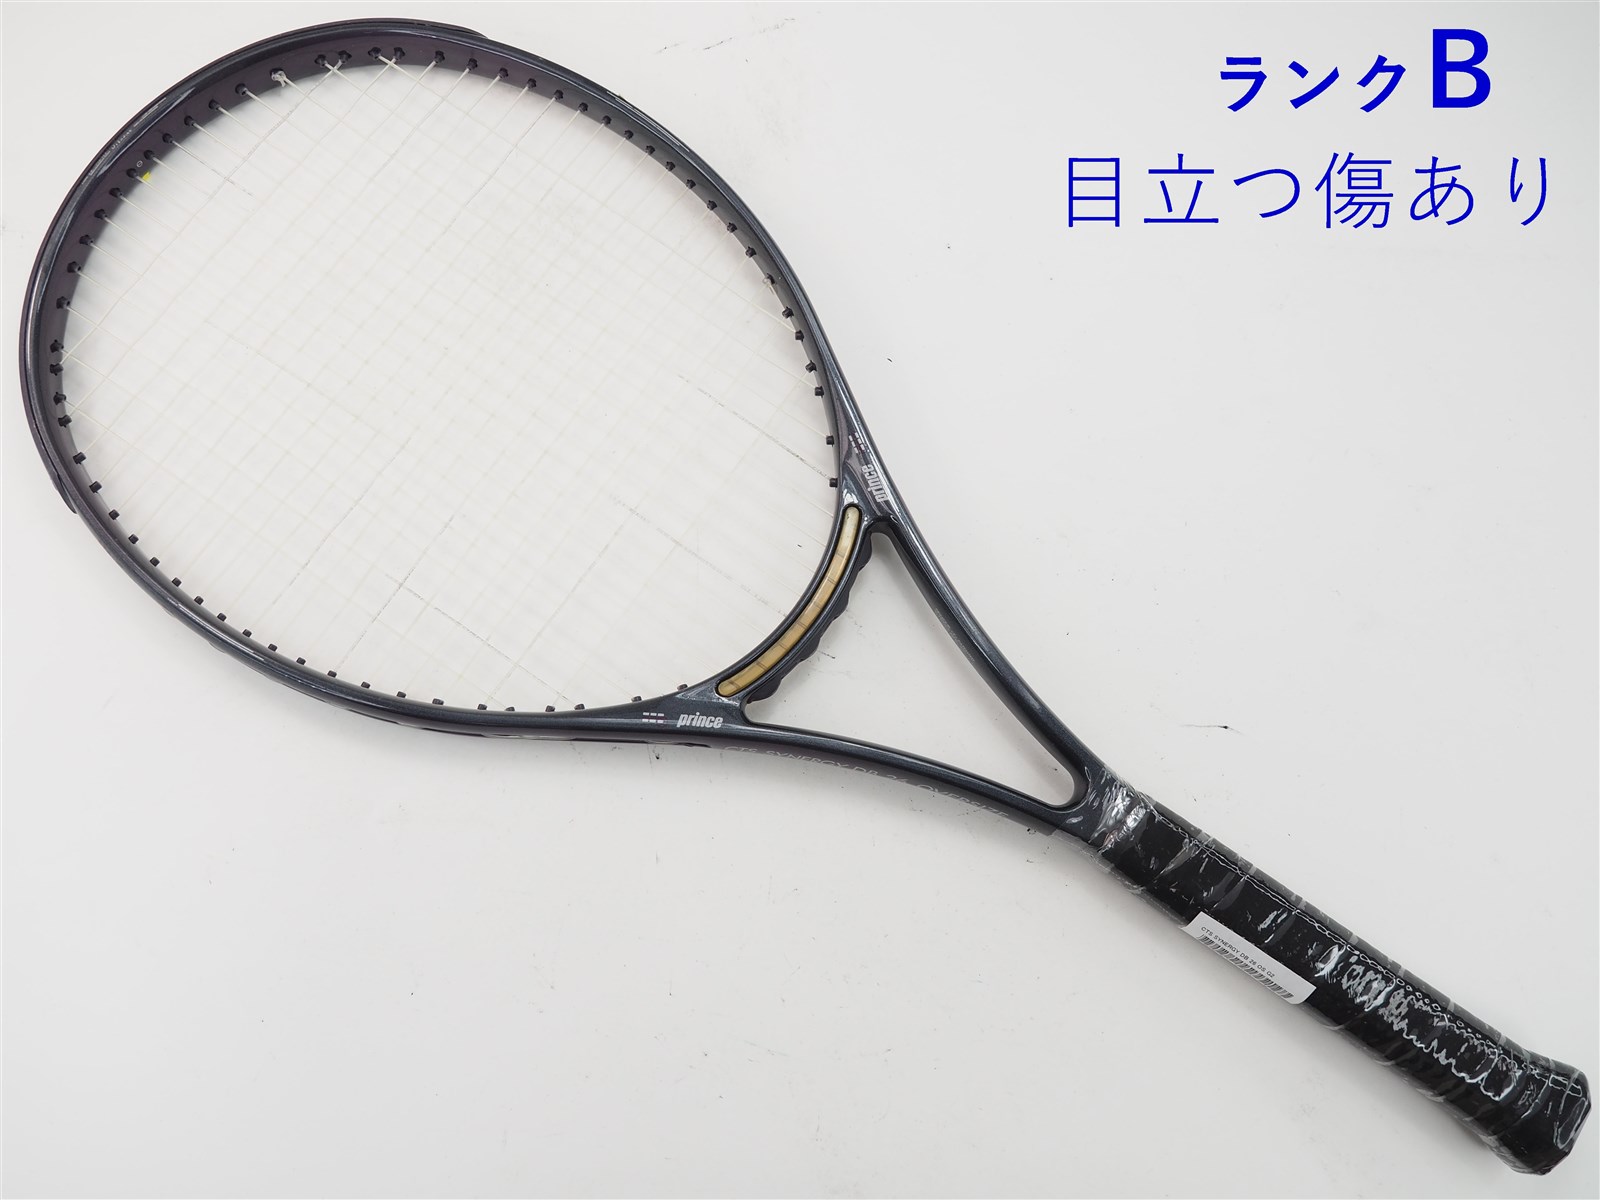 テニスラケット プリンス シナジー シエラ OS (G2)PRINCE SYNERGY SIERRA OS